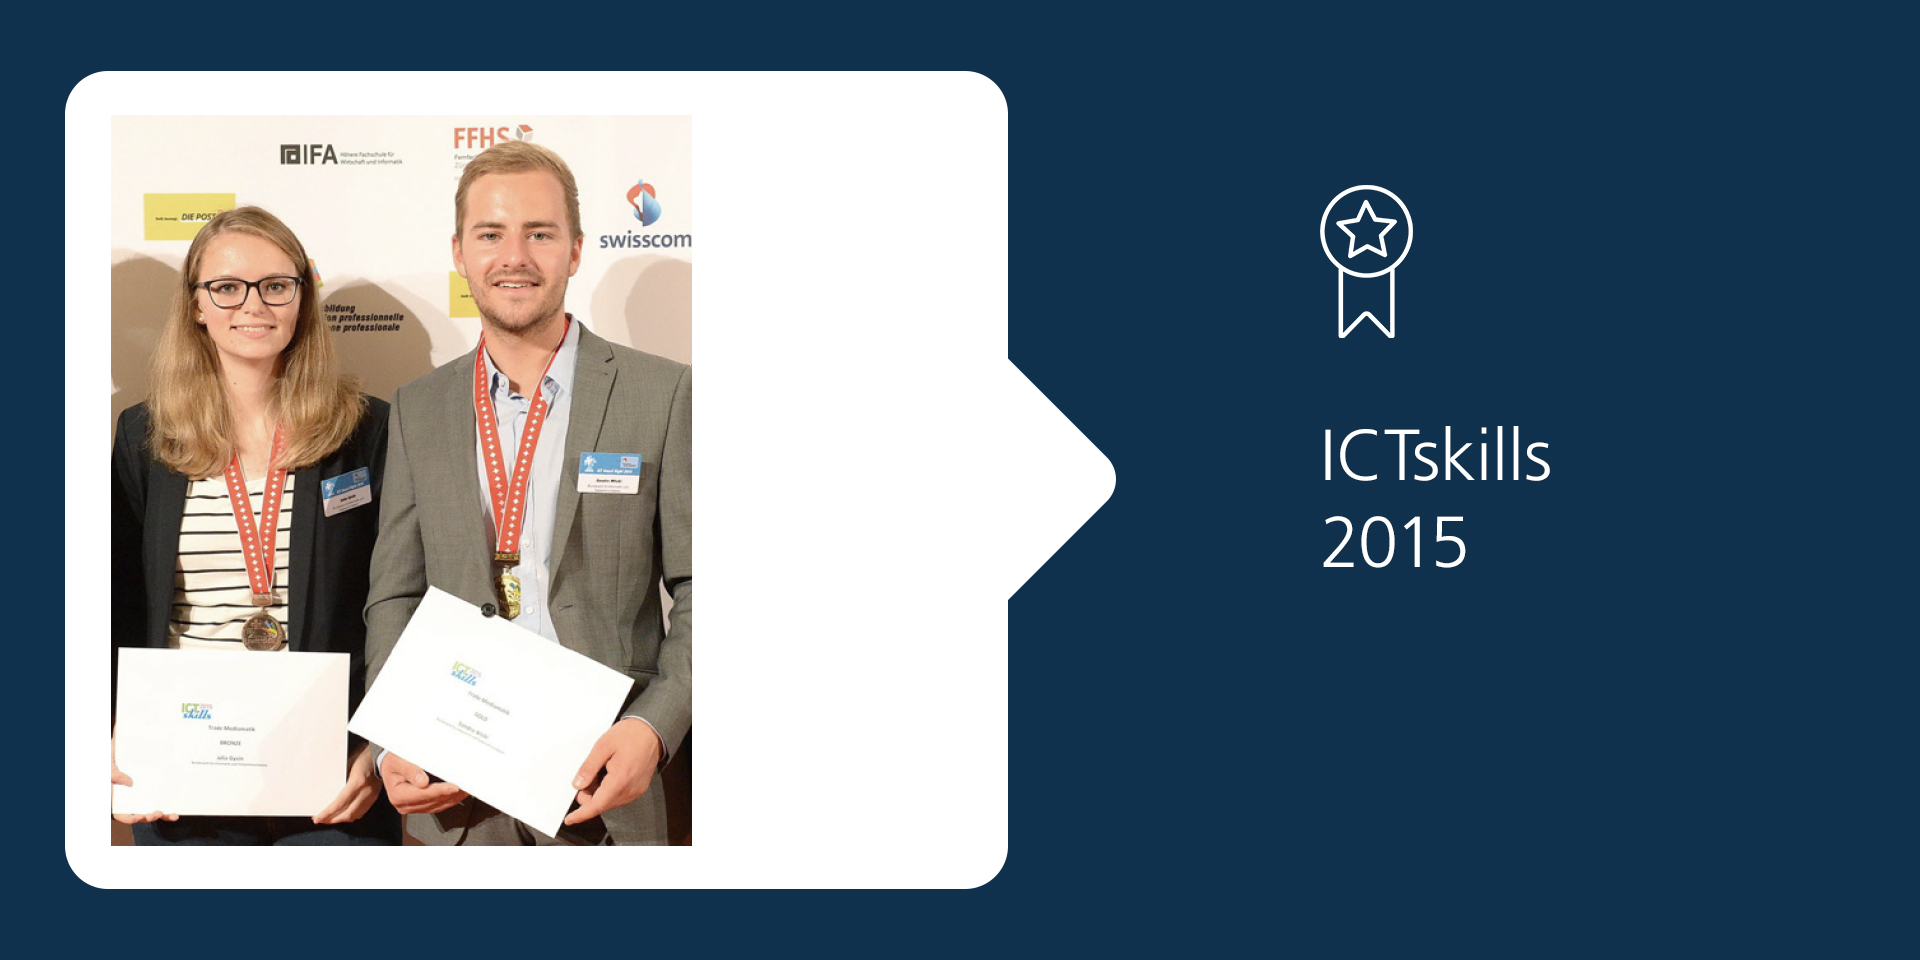 Julia Gysin et Sandro Wicki avec les distinctions qu’ils ont obtenues lors des ICTskills en 2015.